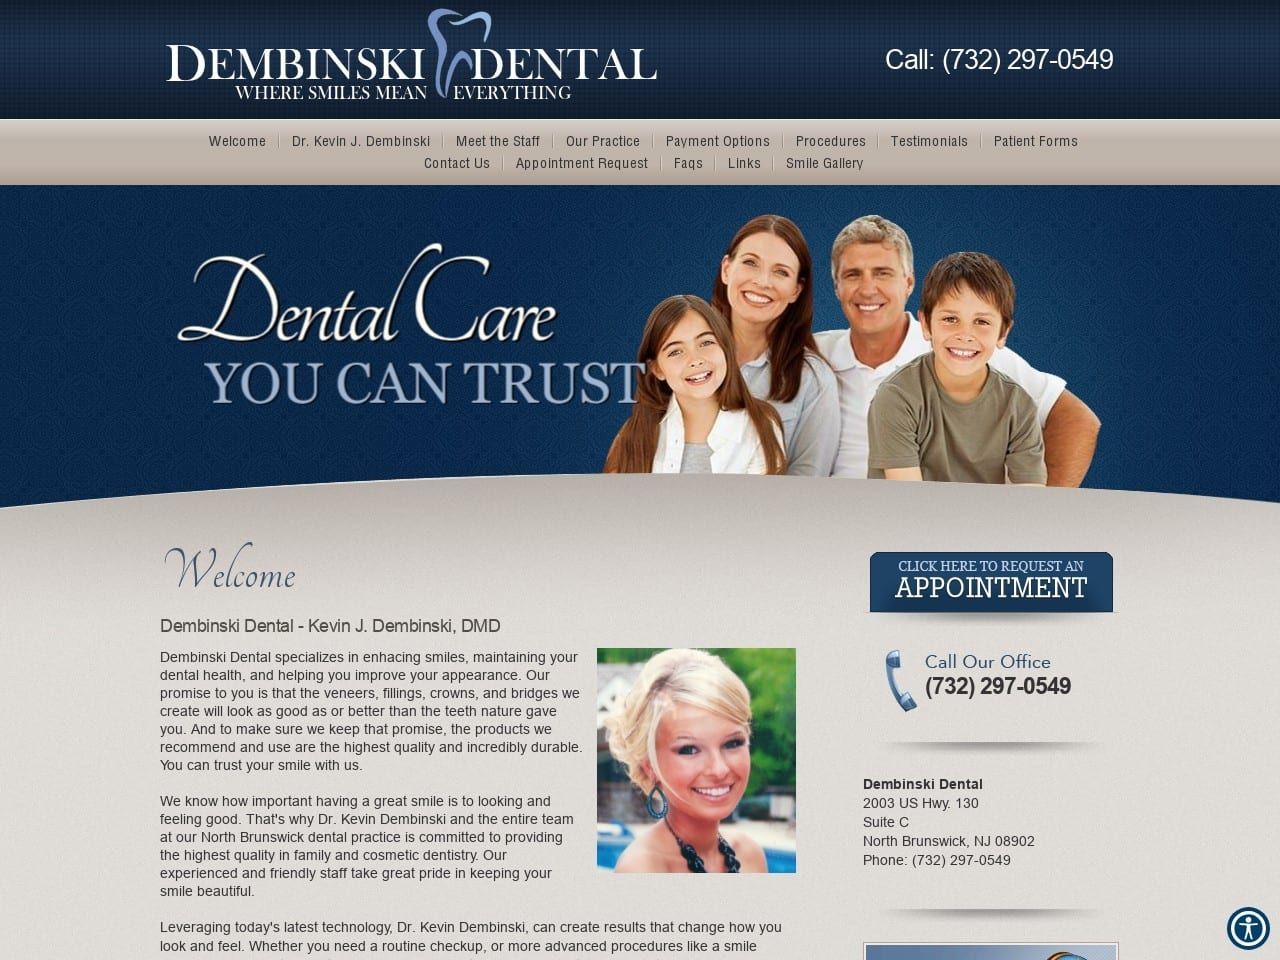 Dembinski Dental Website Screenshot from dembinskidental.com